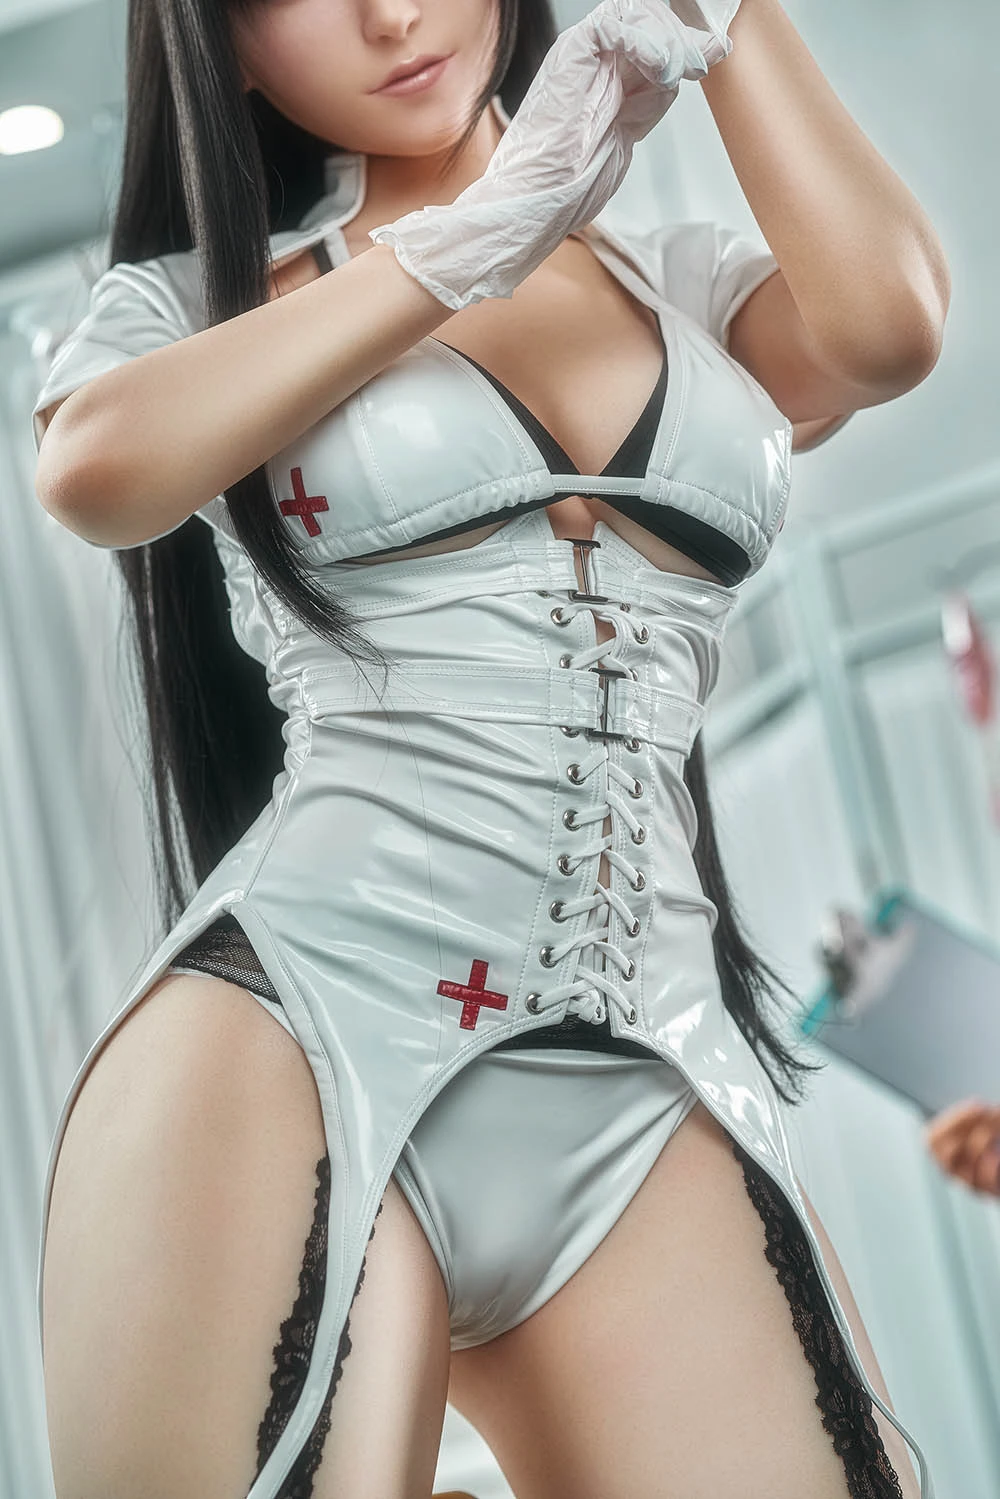 Tifa and Aerith -Final Fantasy 167cm/5ft5 curvy sex doll wearing nurse uniform